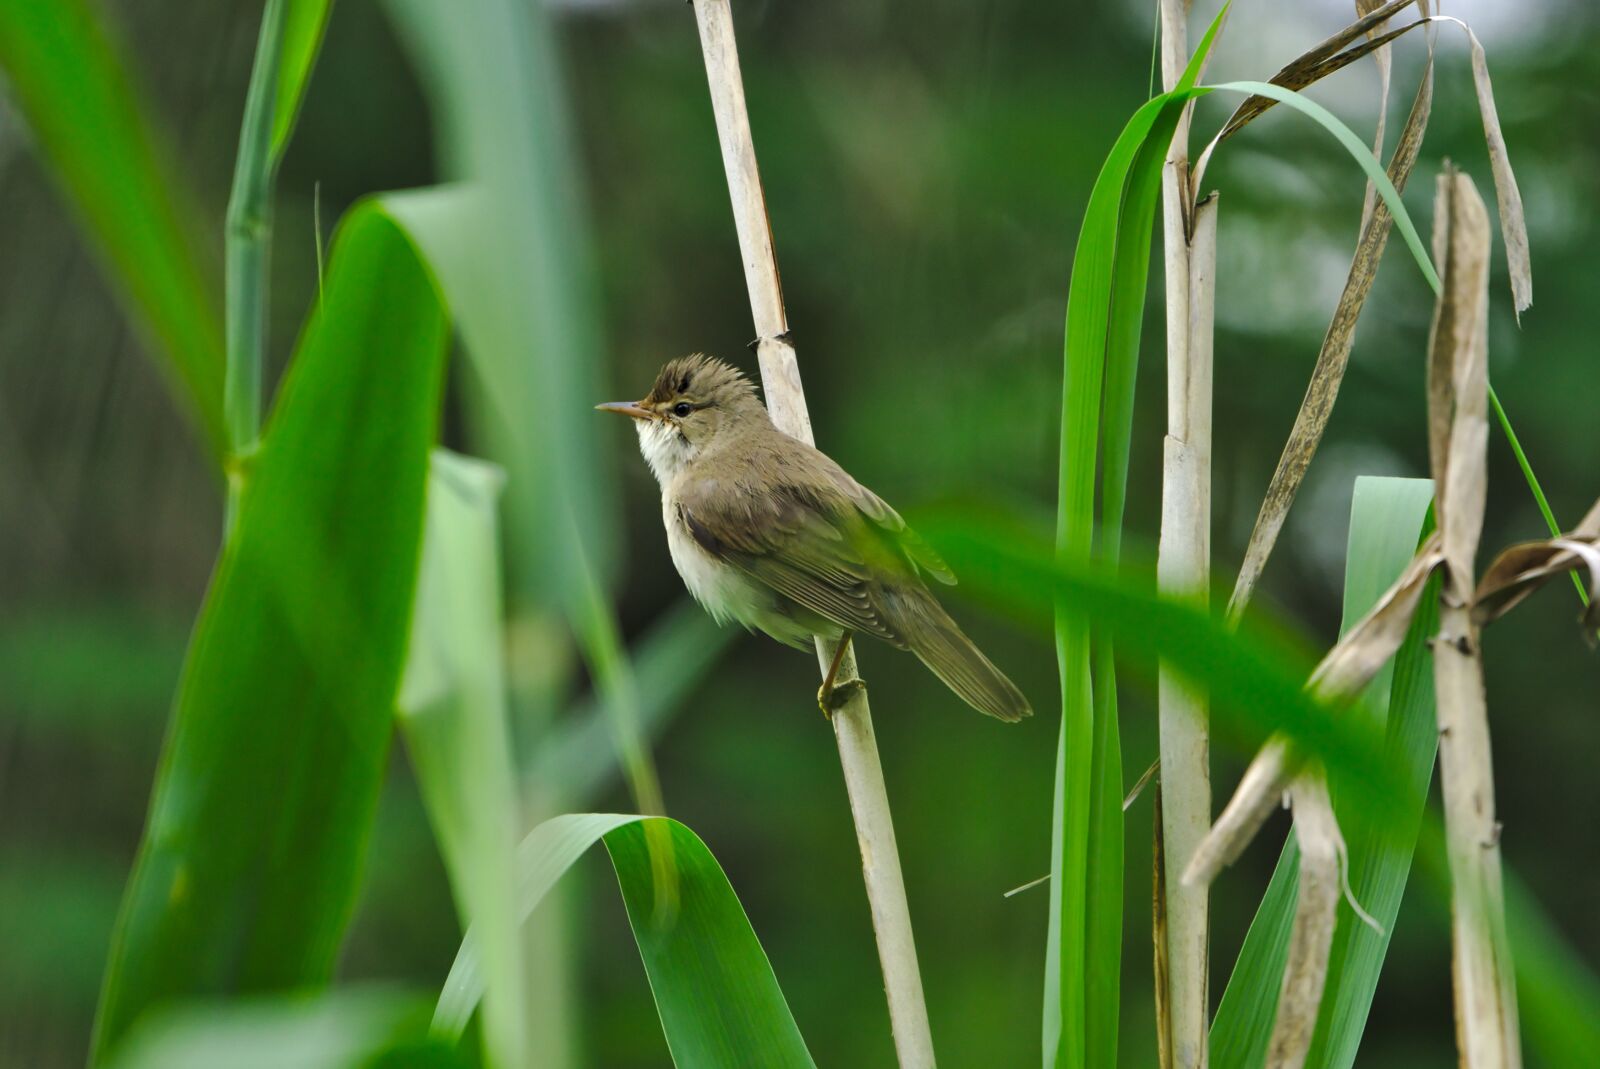 Sony a6000 sample photo. Tube singer, sparrow bird photography